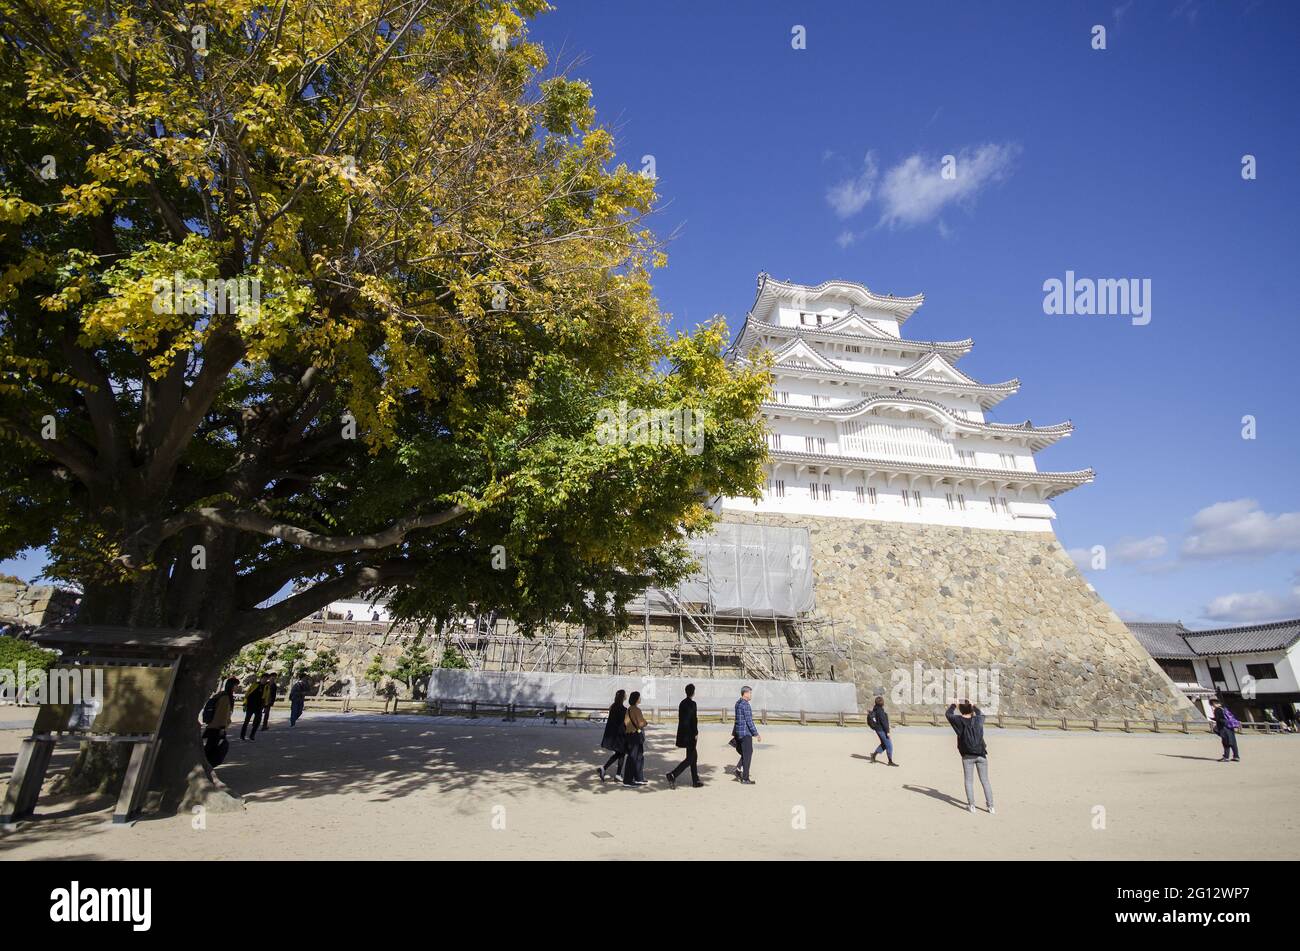 HIMEJI, JAPAN - 17. Dezember 2019: Himeji, Japan- 30. November 2019: Hauptgehege (Tenshukaku) der Burg Himeji nach Beendigung der Reparaturarbeiten 2015. Stockfoto